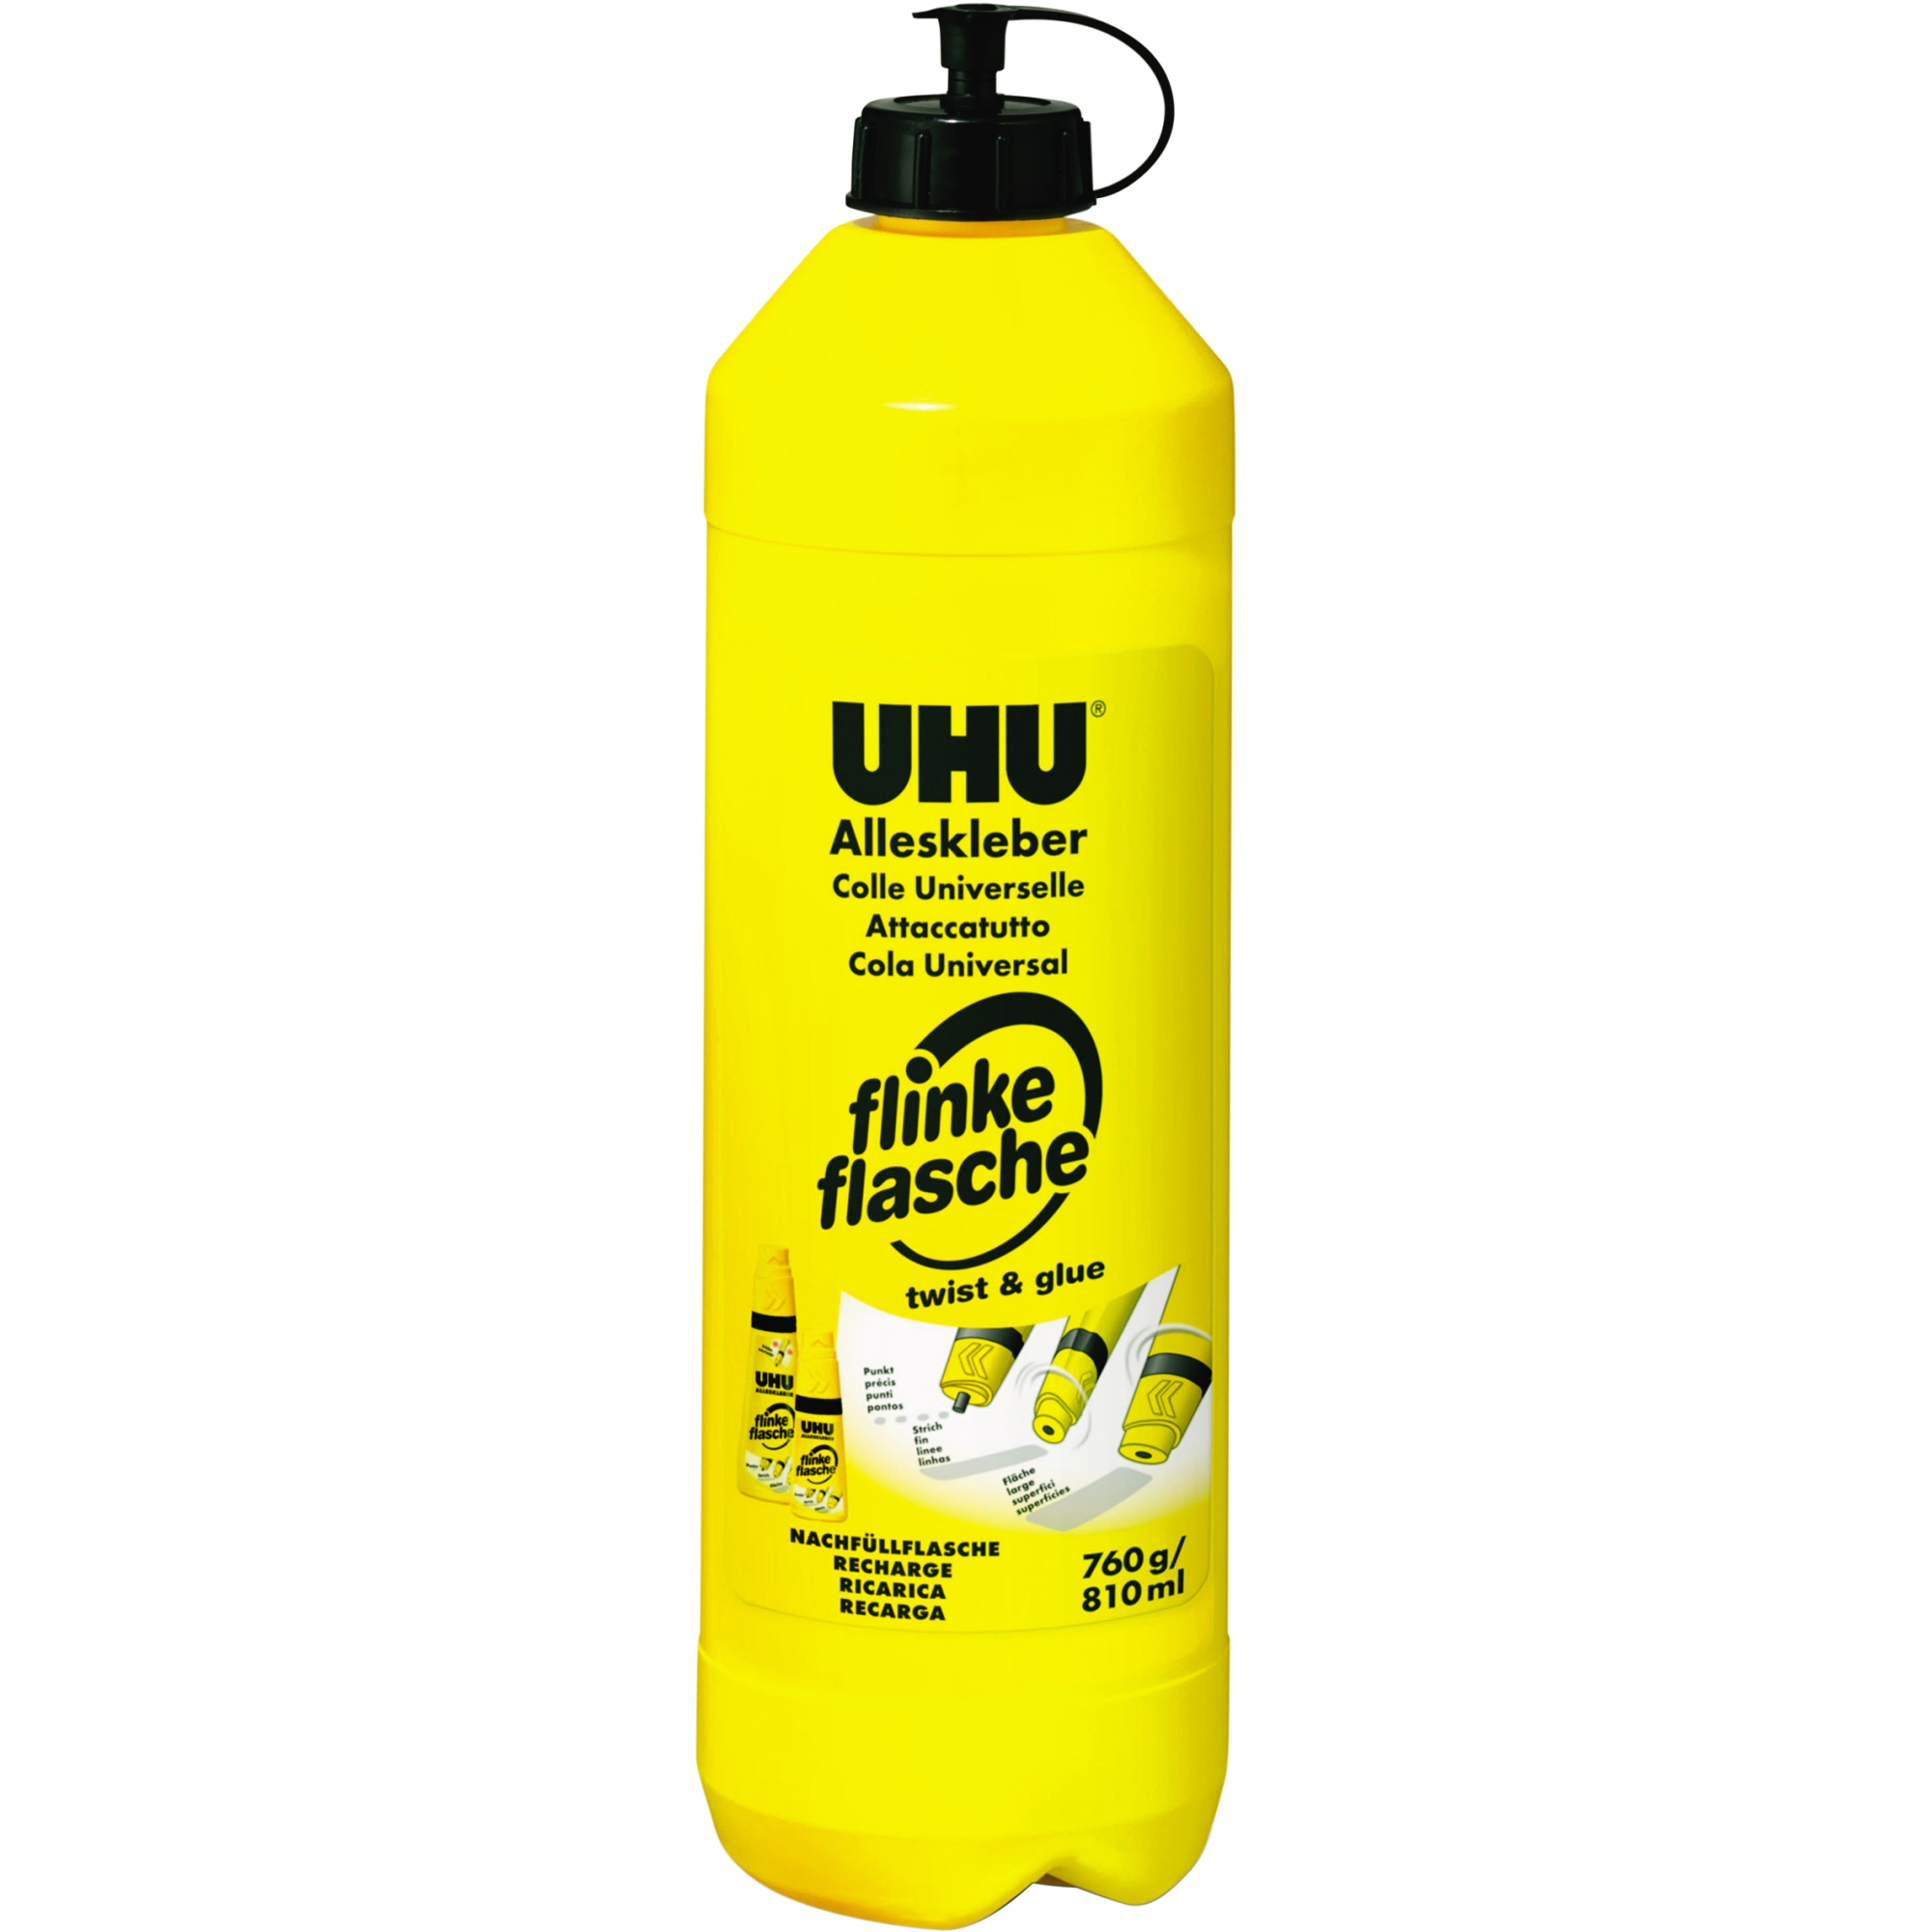 UHU® Nachfüllflasche Alleskleber flinke flasche 760 g